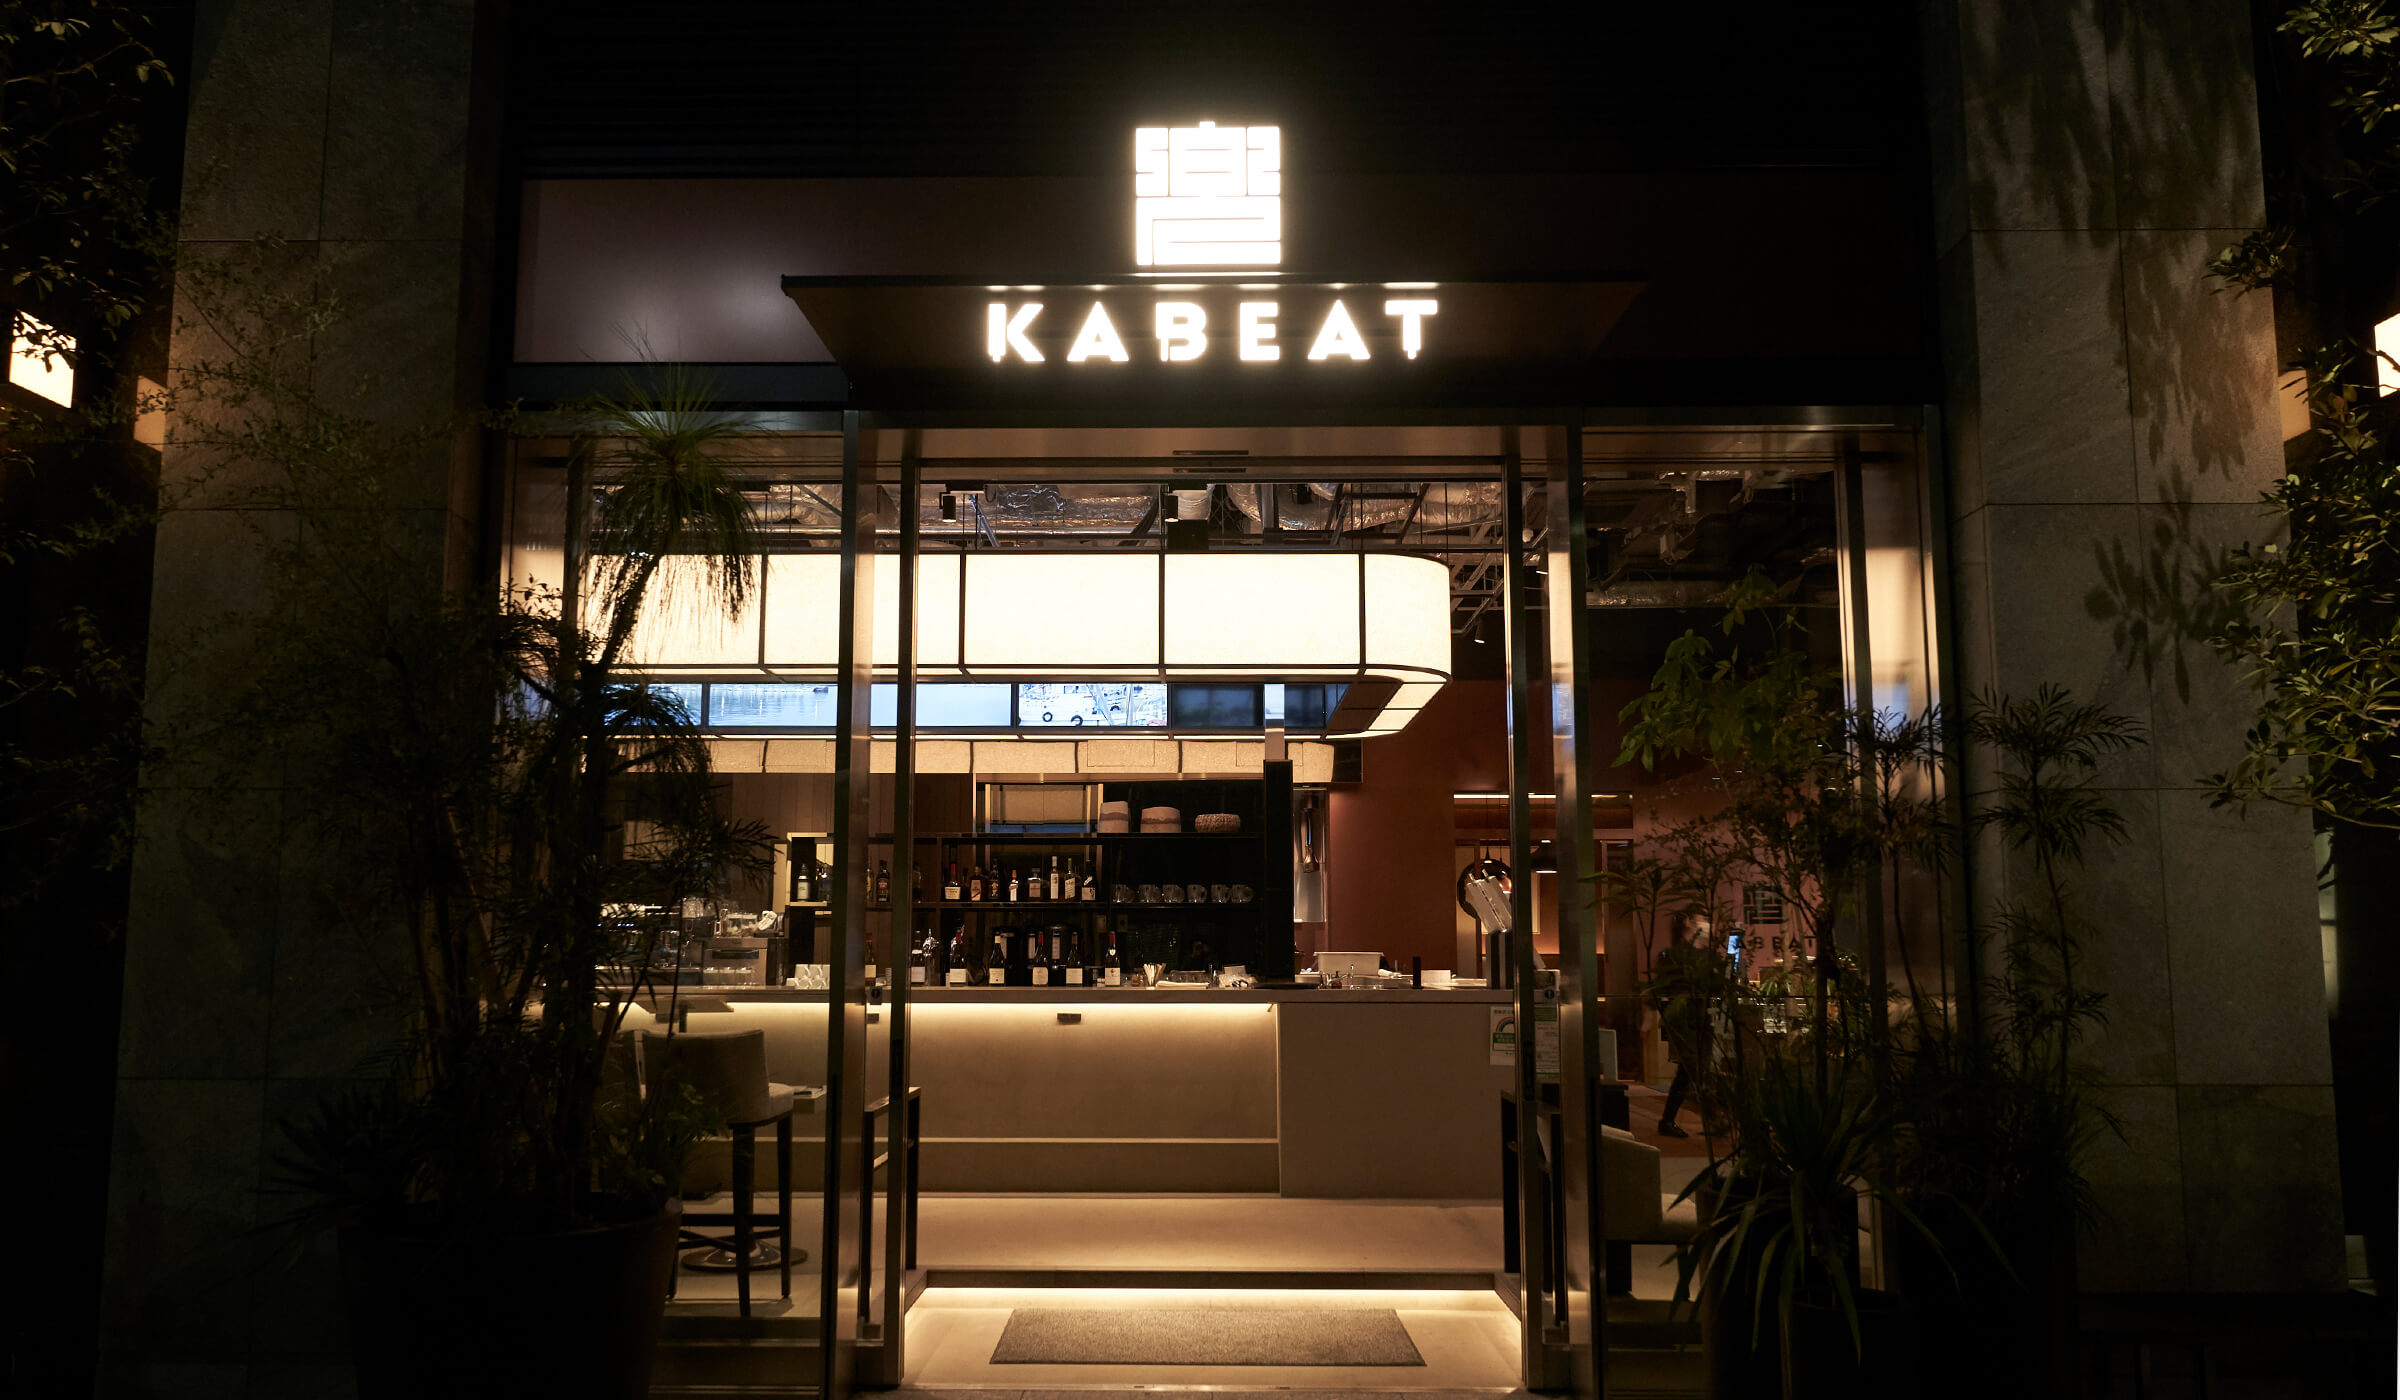 KABEAT -生産者食堂- 映像インスタレーション